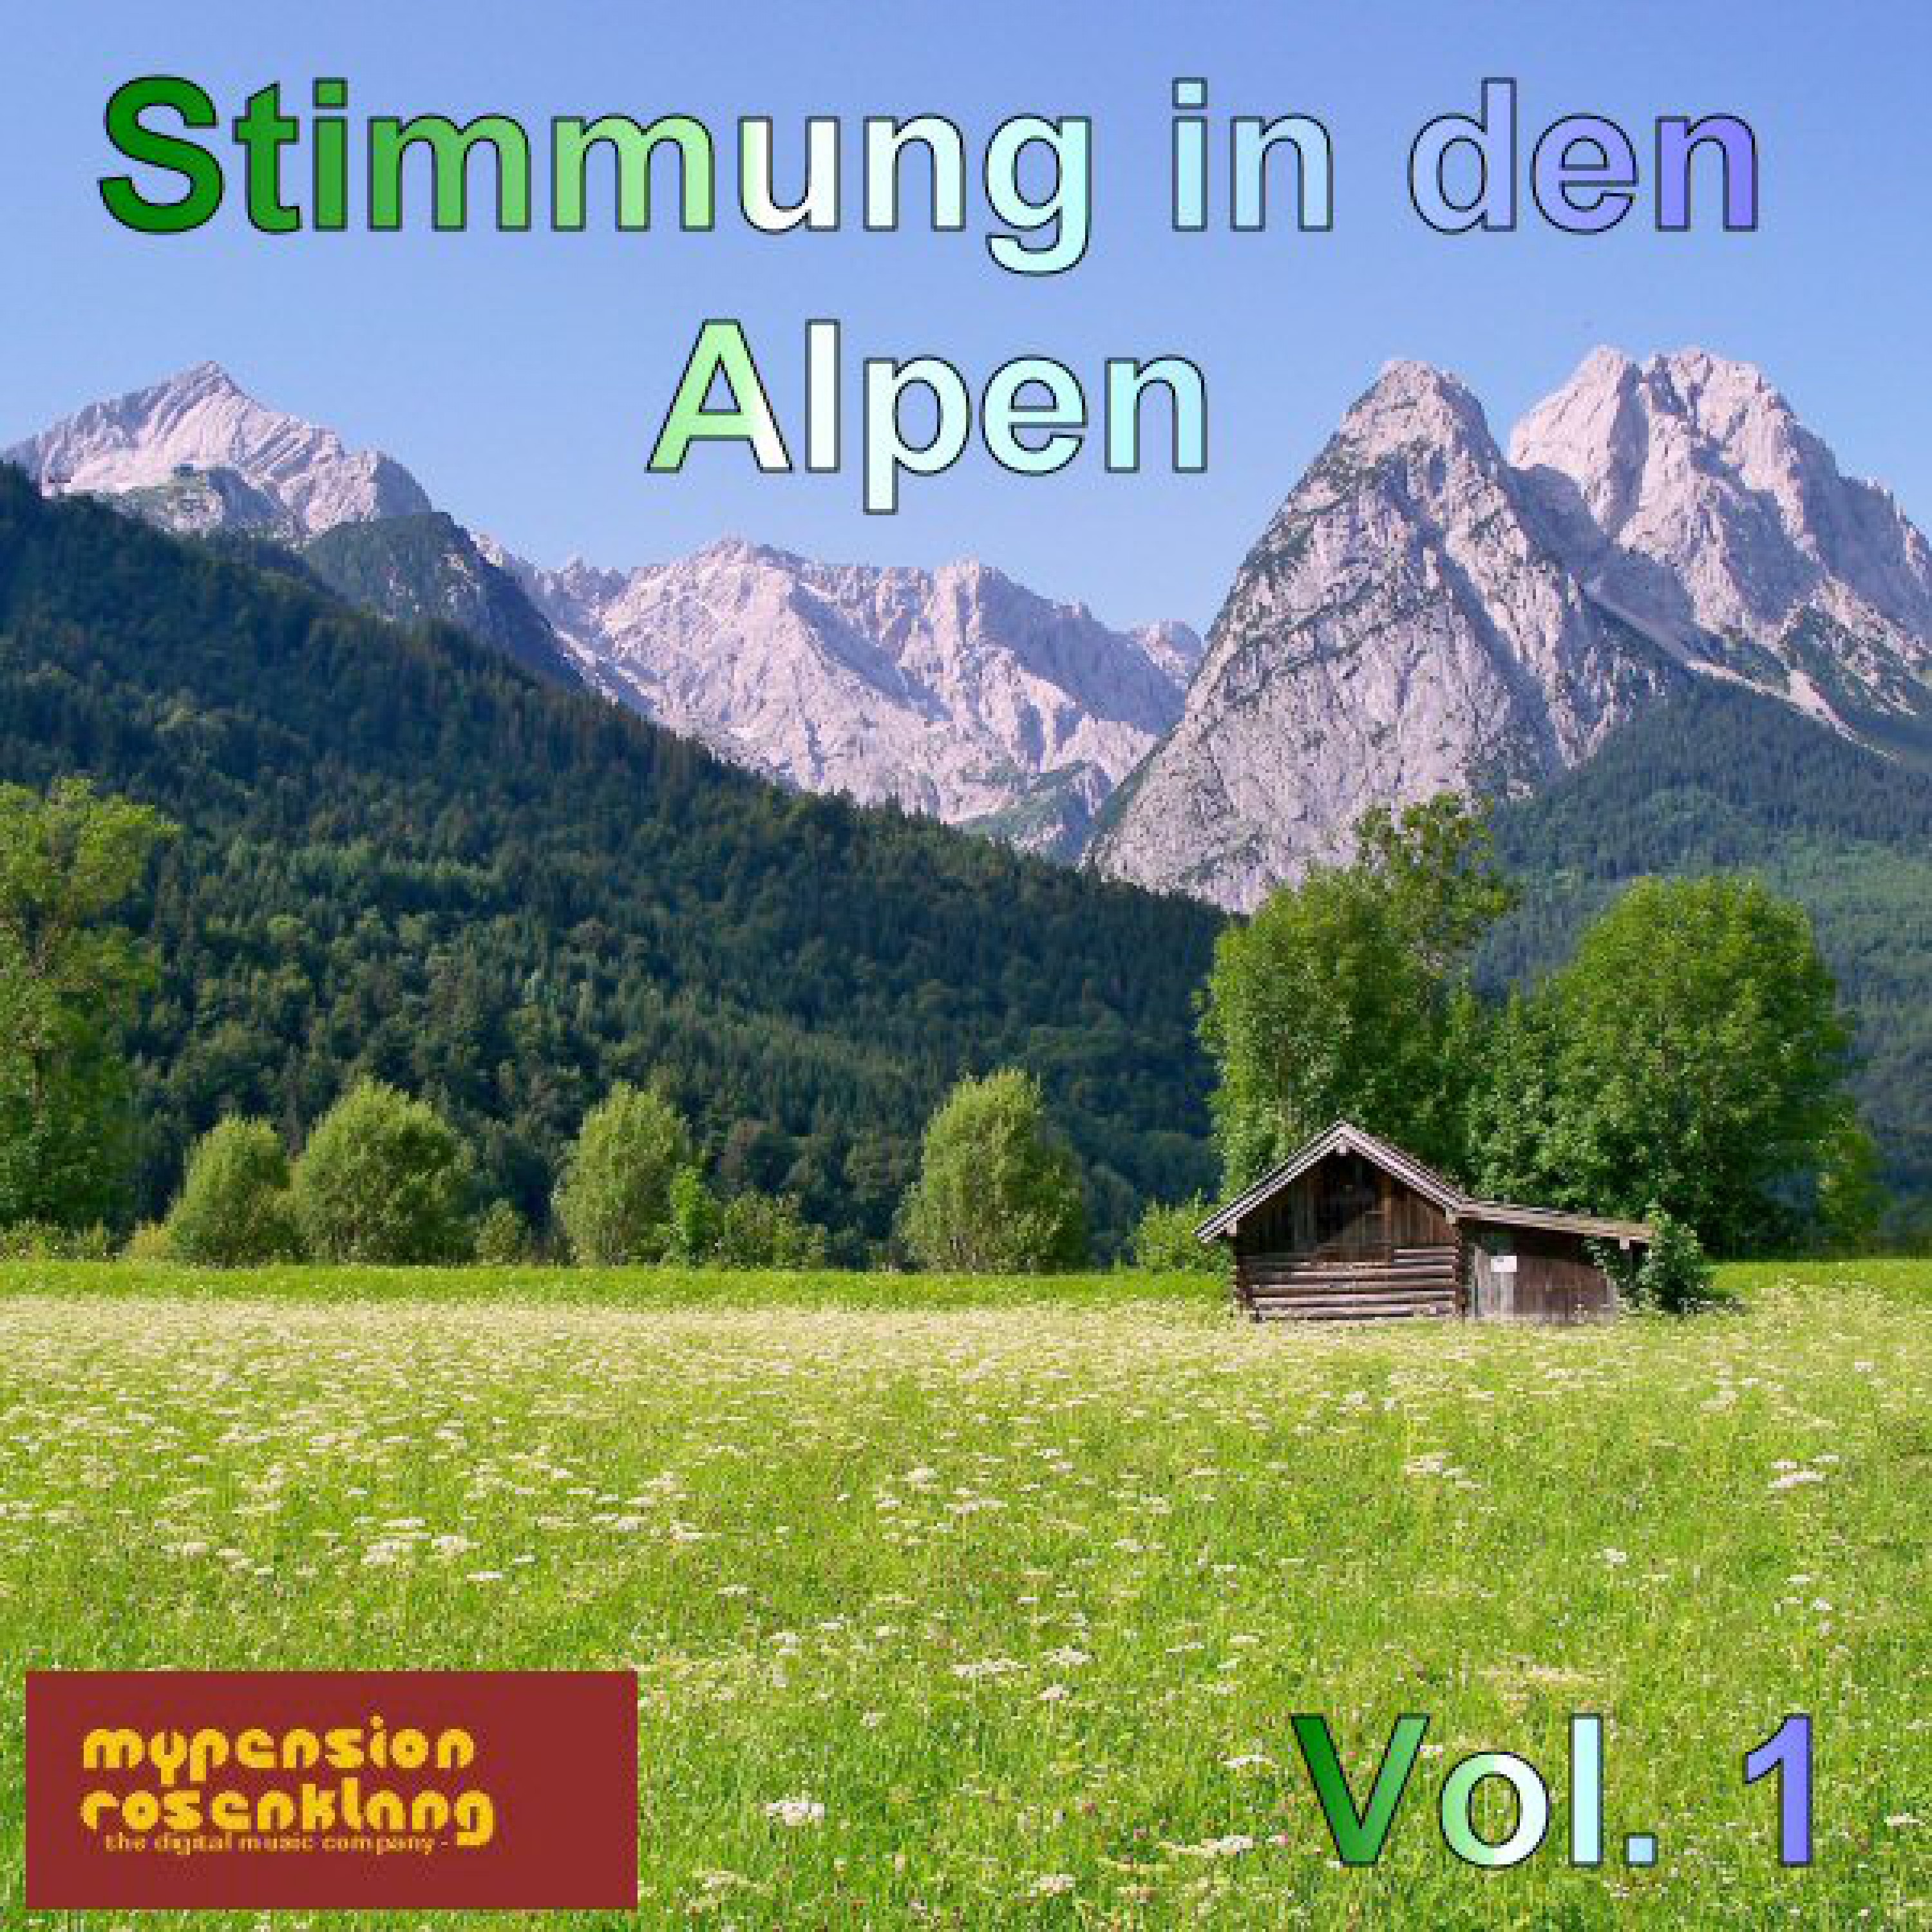 Party in the Alps - Stimmung in Den Alpen Vol. 1